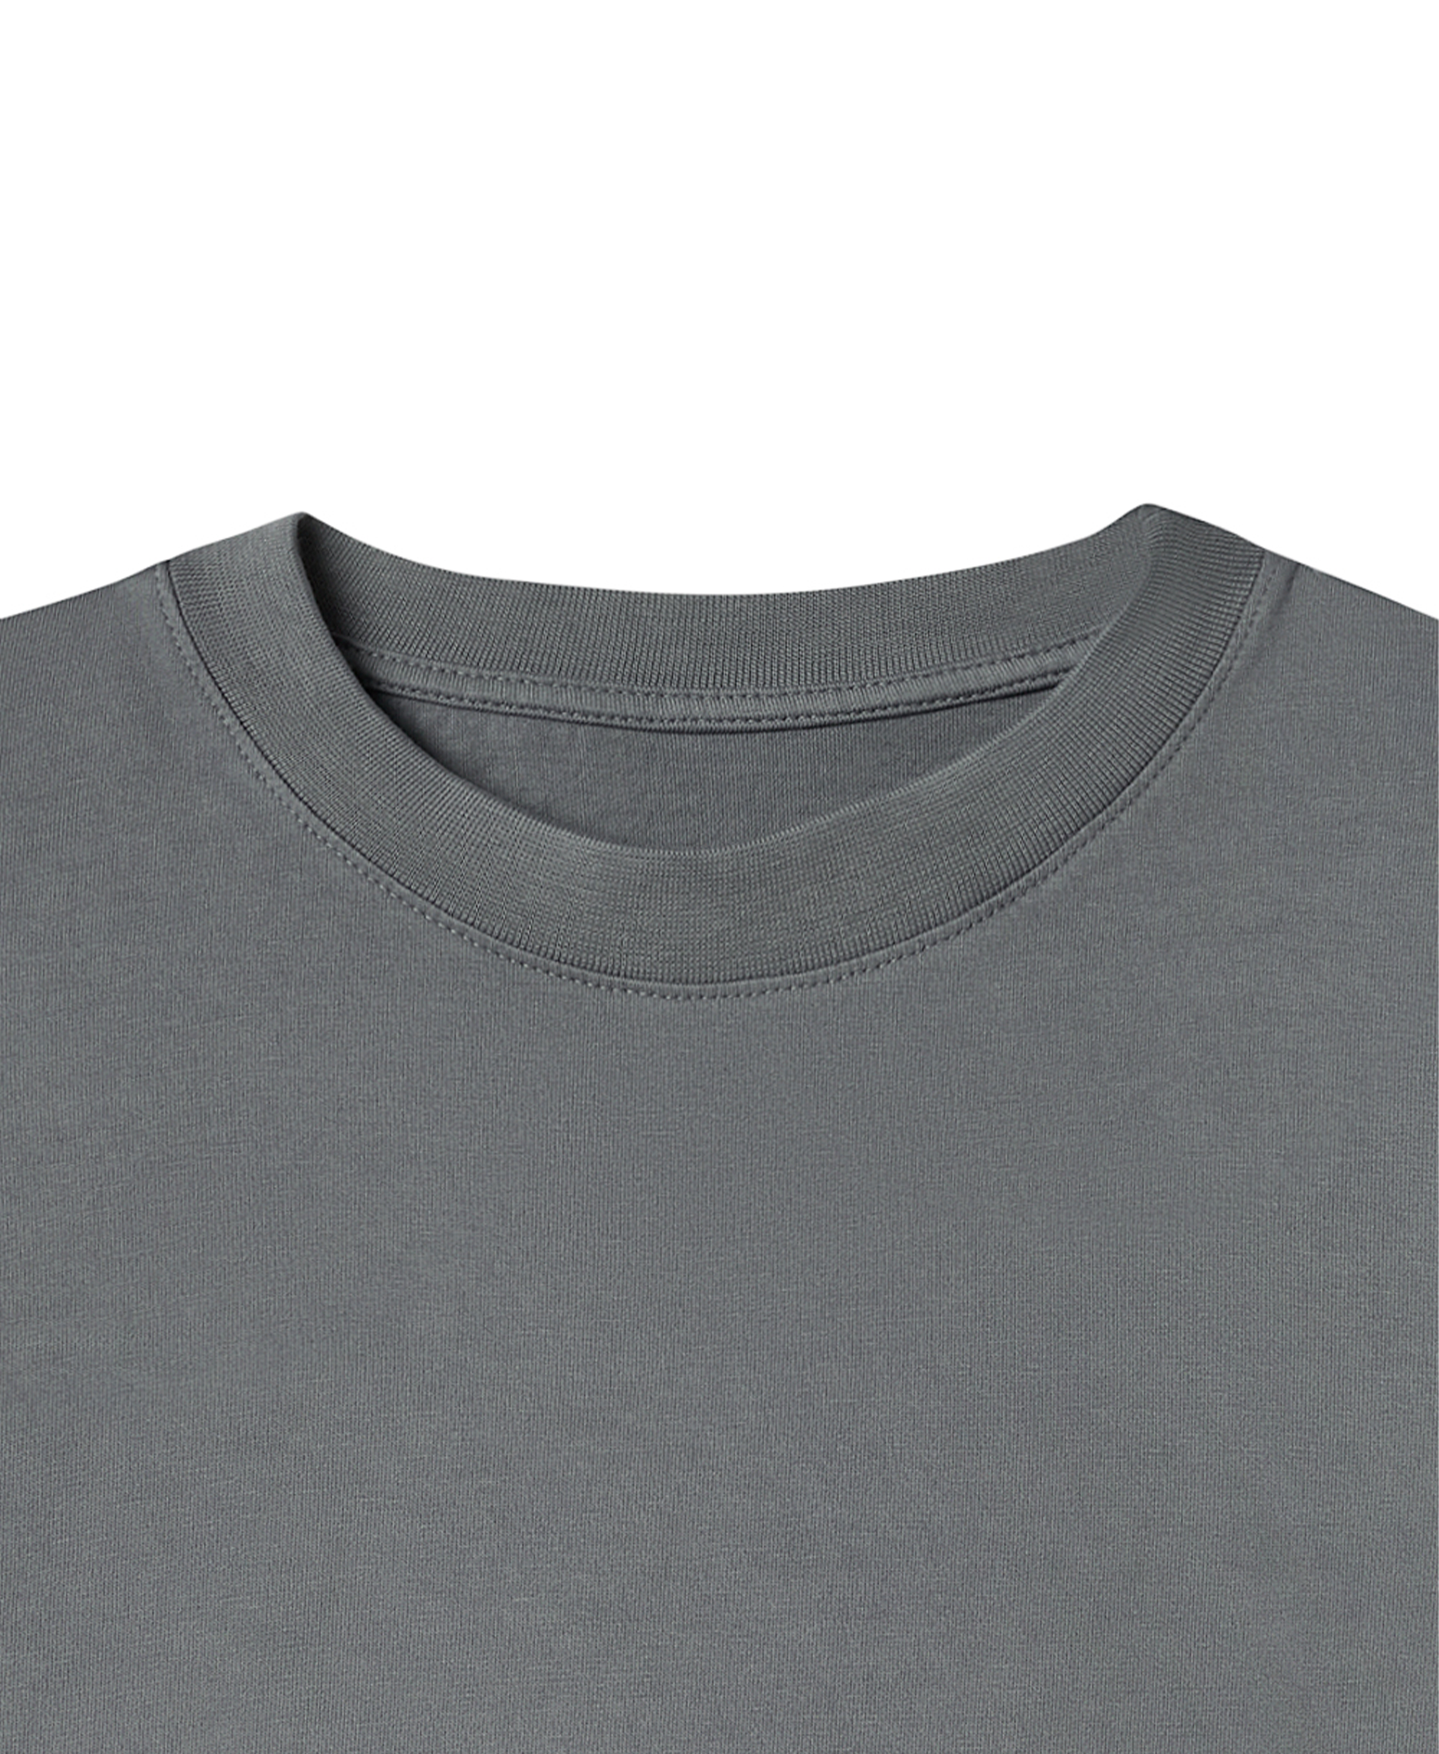 180 GSM 'Iron Gray' T-Shirt